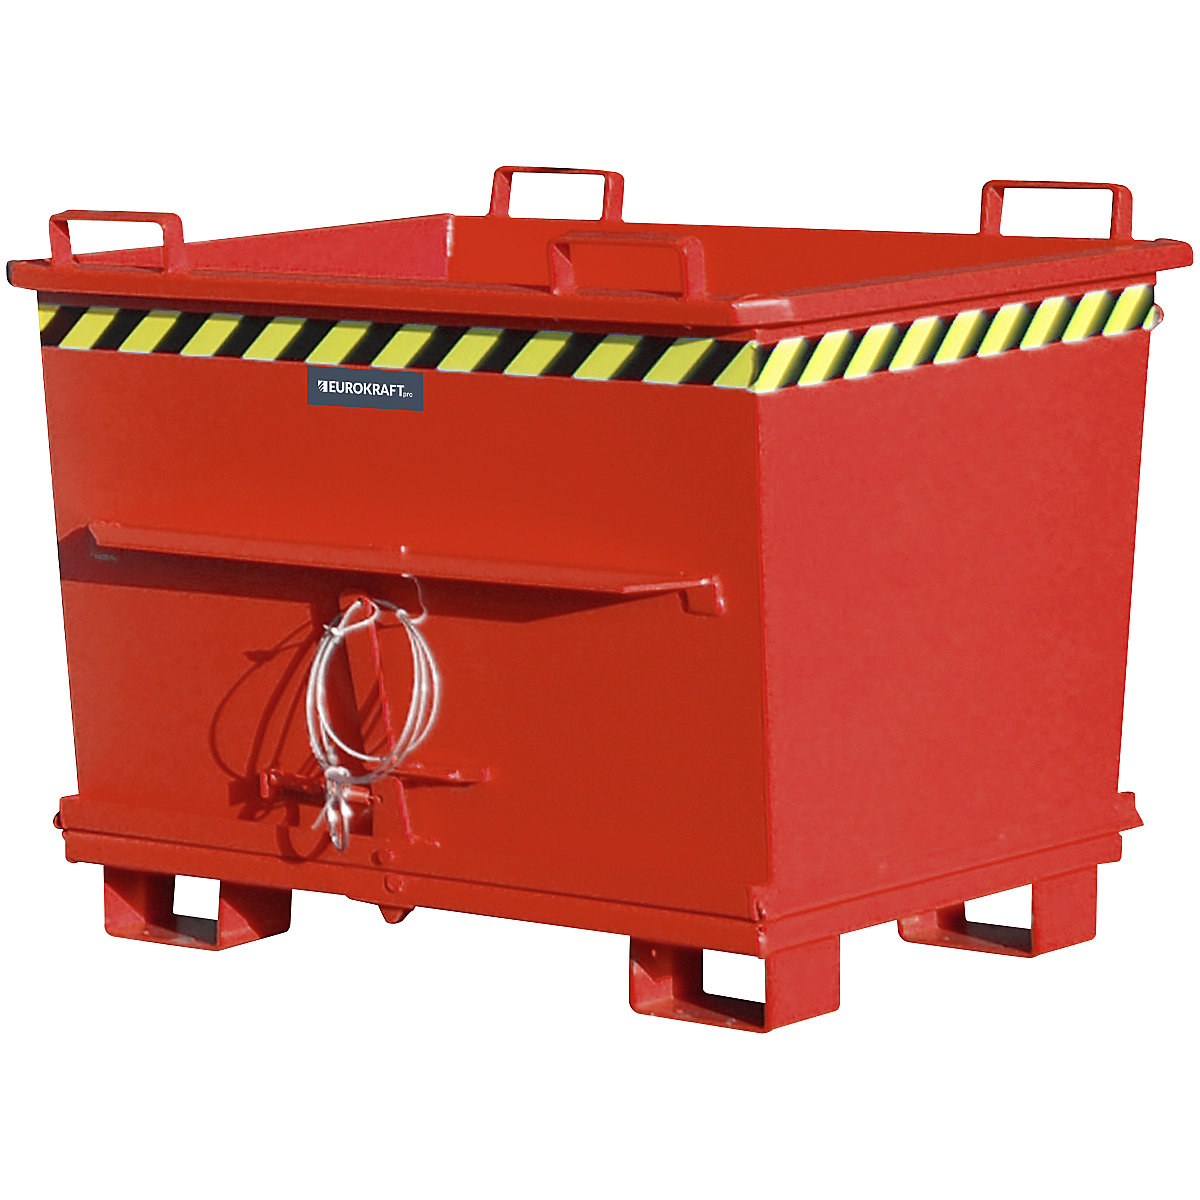 Conteneur conique à fond ouvrant – eurokraft pro, capacité 0,7 m³, force 1500 kg, coloris rouge RAL 3000-16